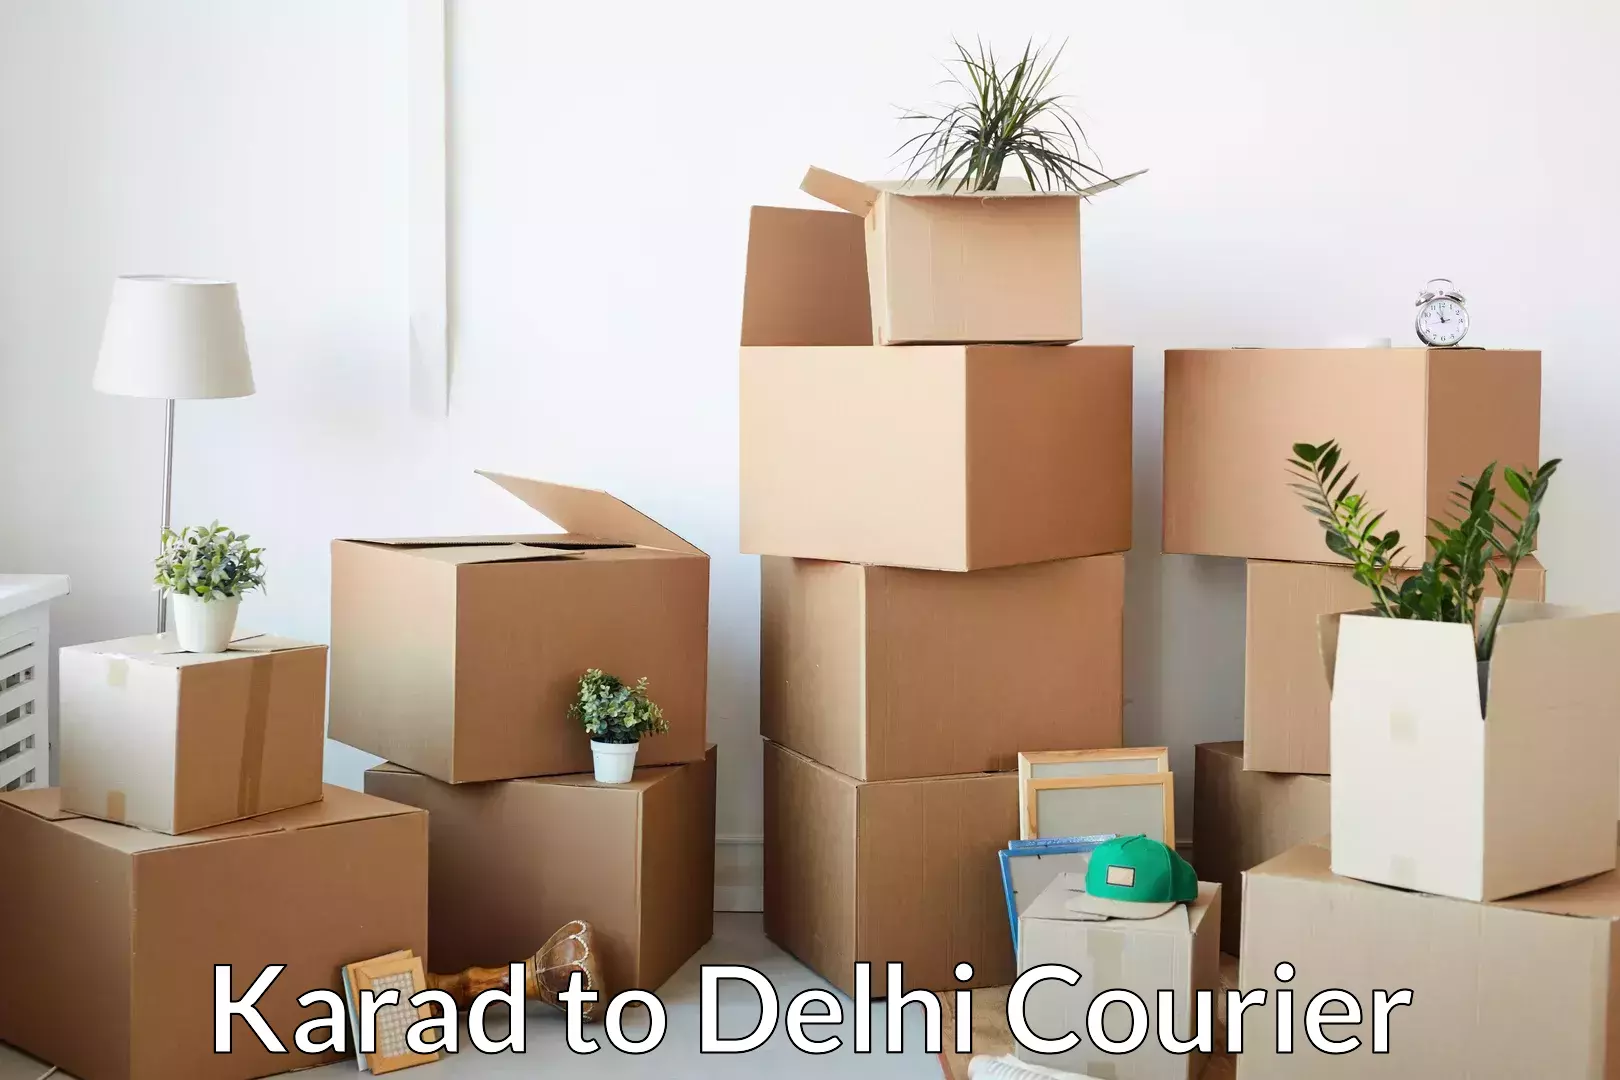 Flexible moving solutions Karad to IIT Delhi